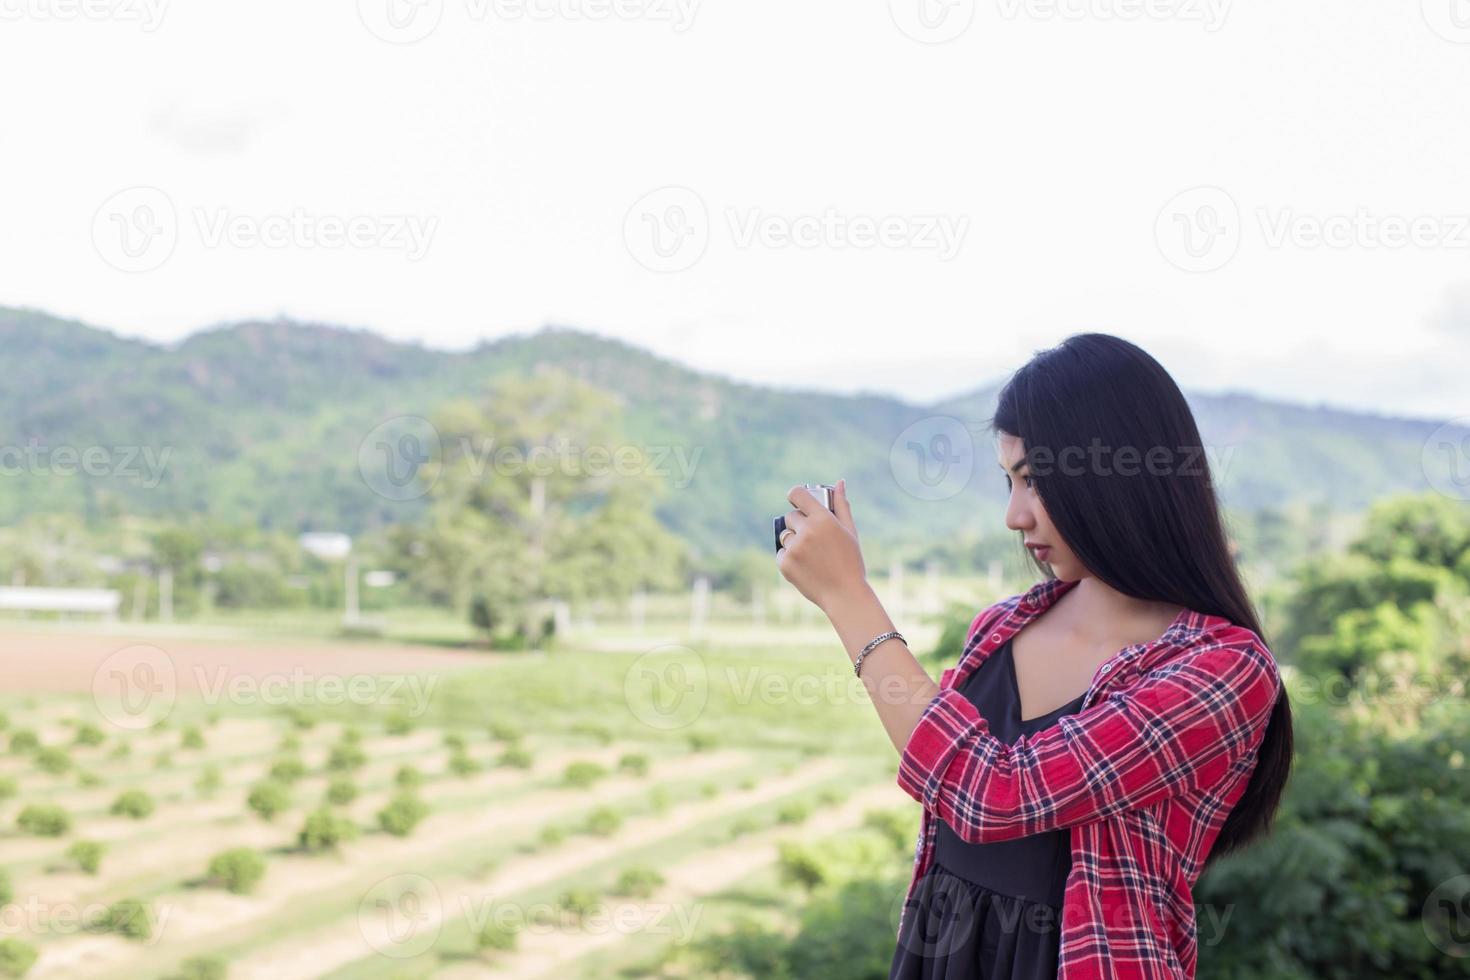 jahrgang der schönen frauenfotografie stehende hand, die retro-kamera mit sonnenaufgang hält, weicher traumstil foto